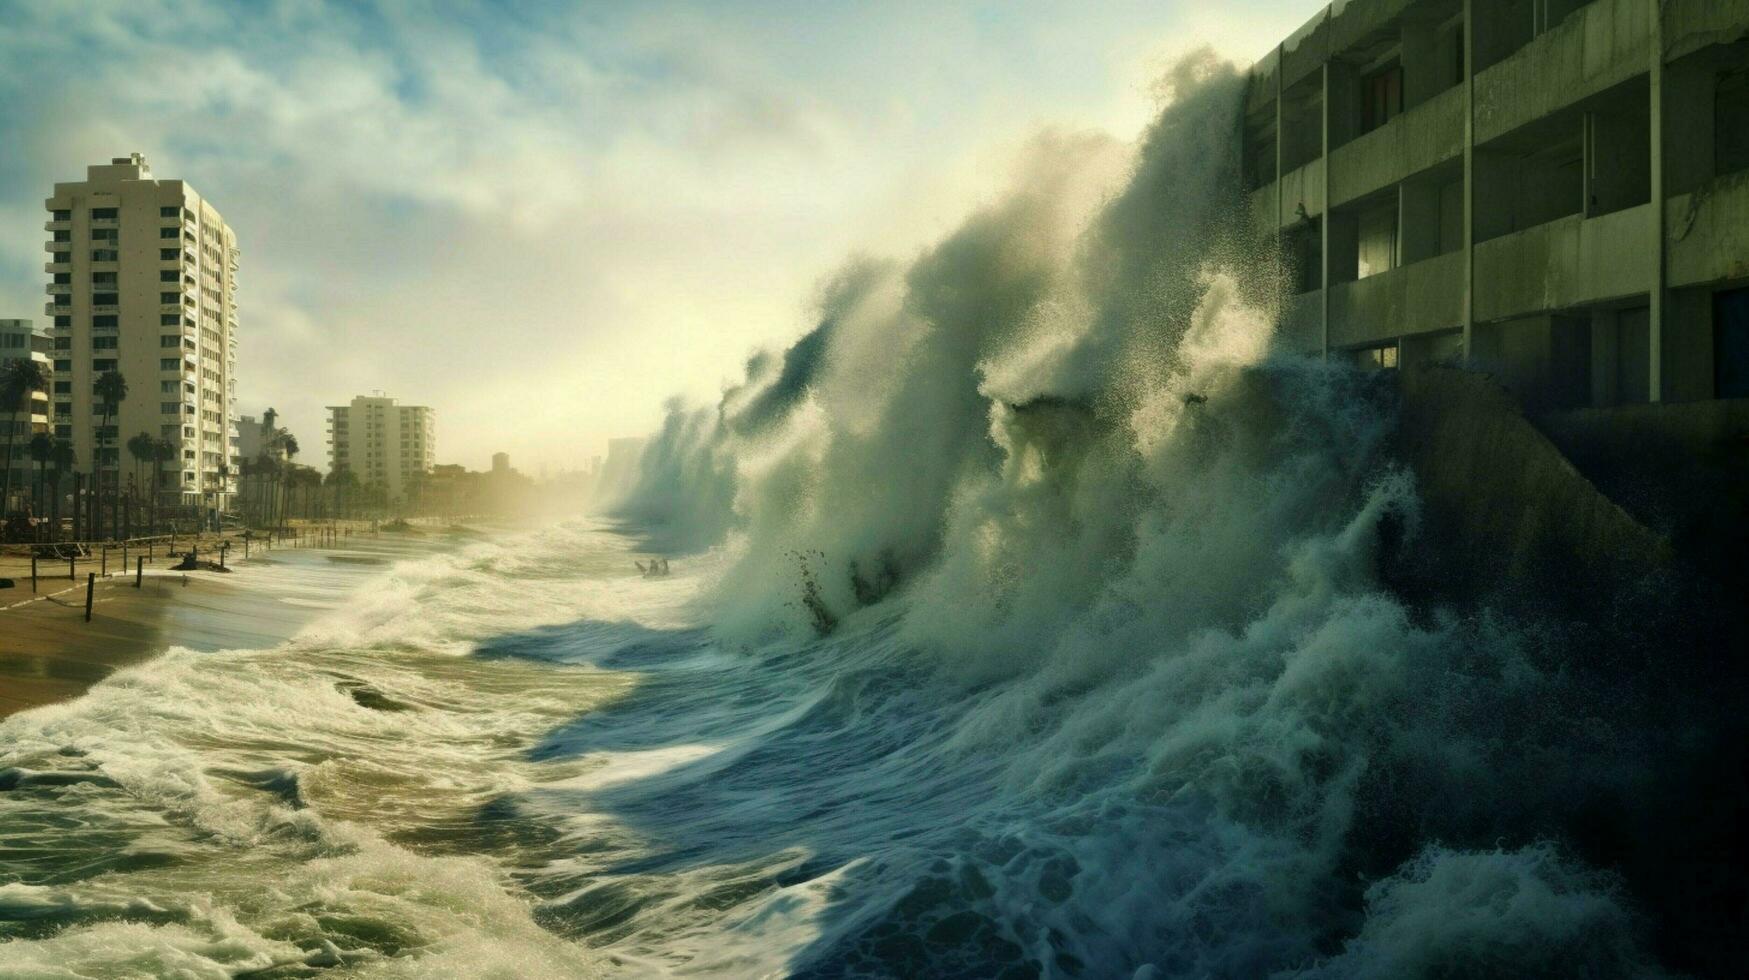 des murs de l'eau en hausse de le océan à dévaster photo